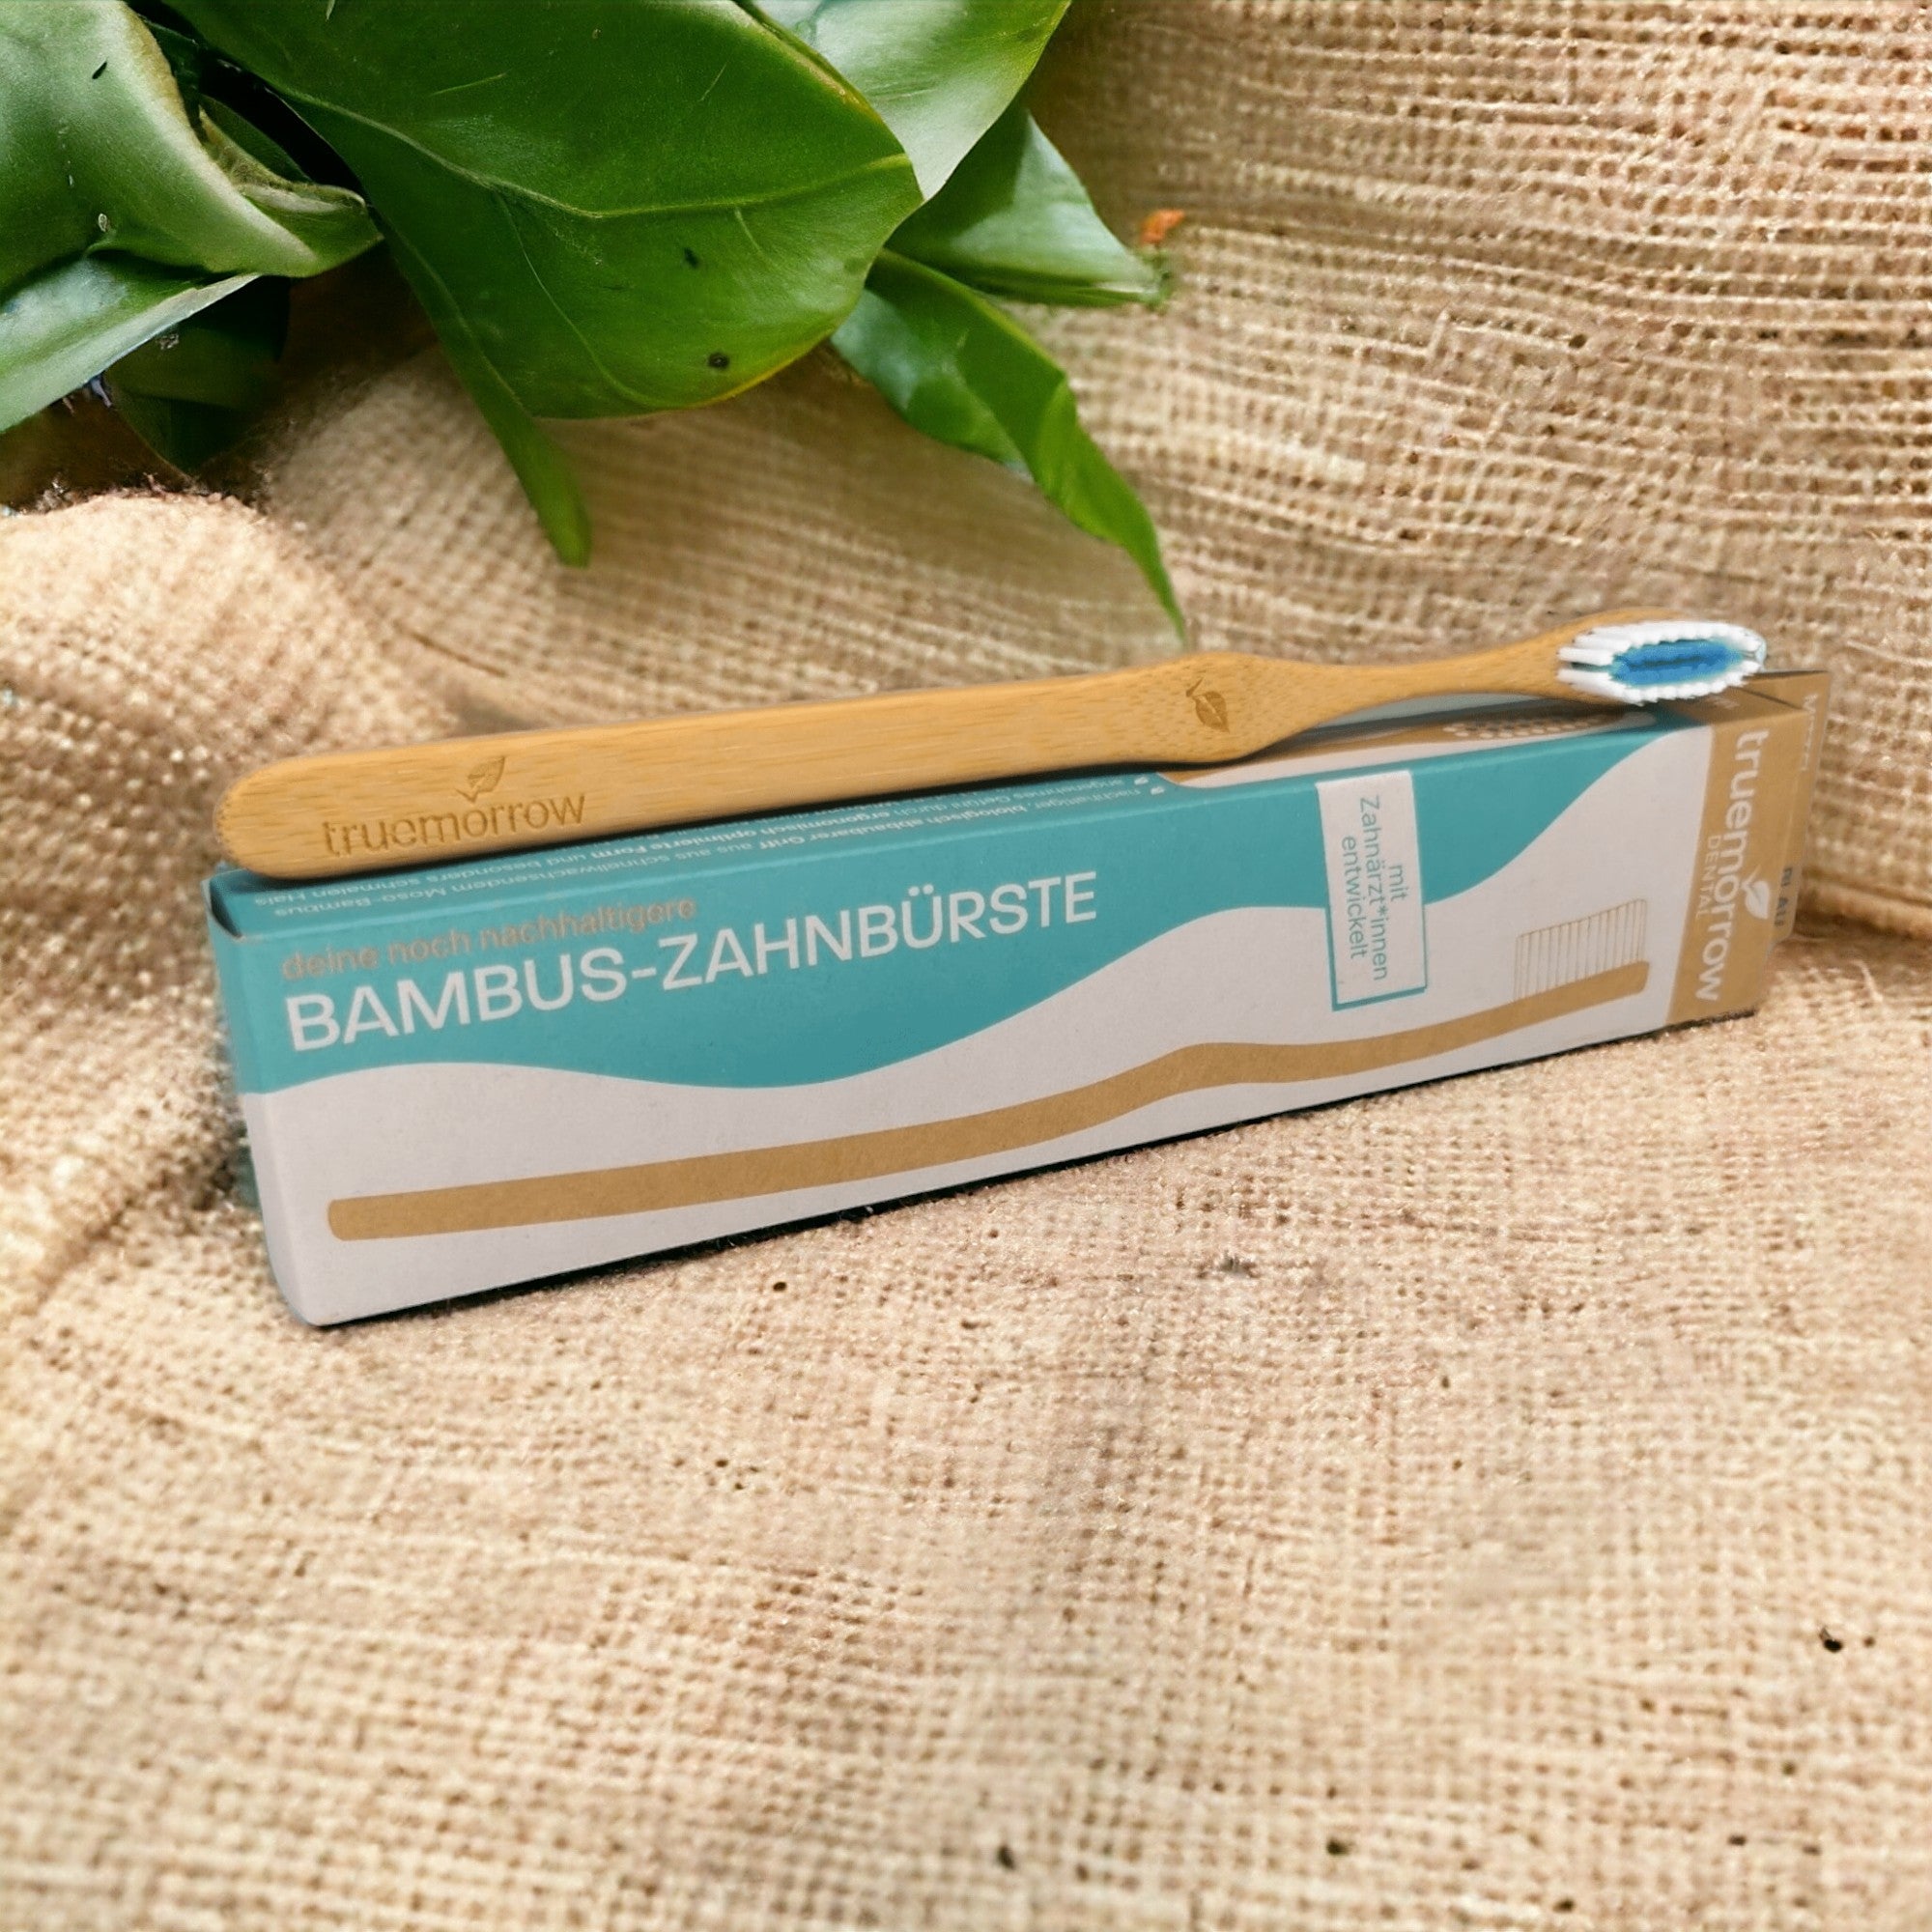 truemorrow Bambus-Zahnbüste platziert auf der Kartonage  auf einem beigen Tuch mit Bambusblättern